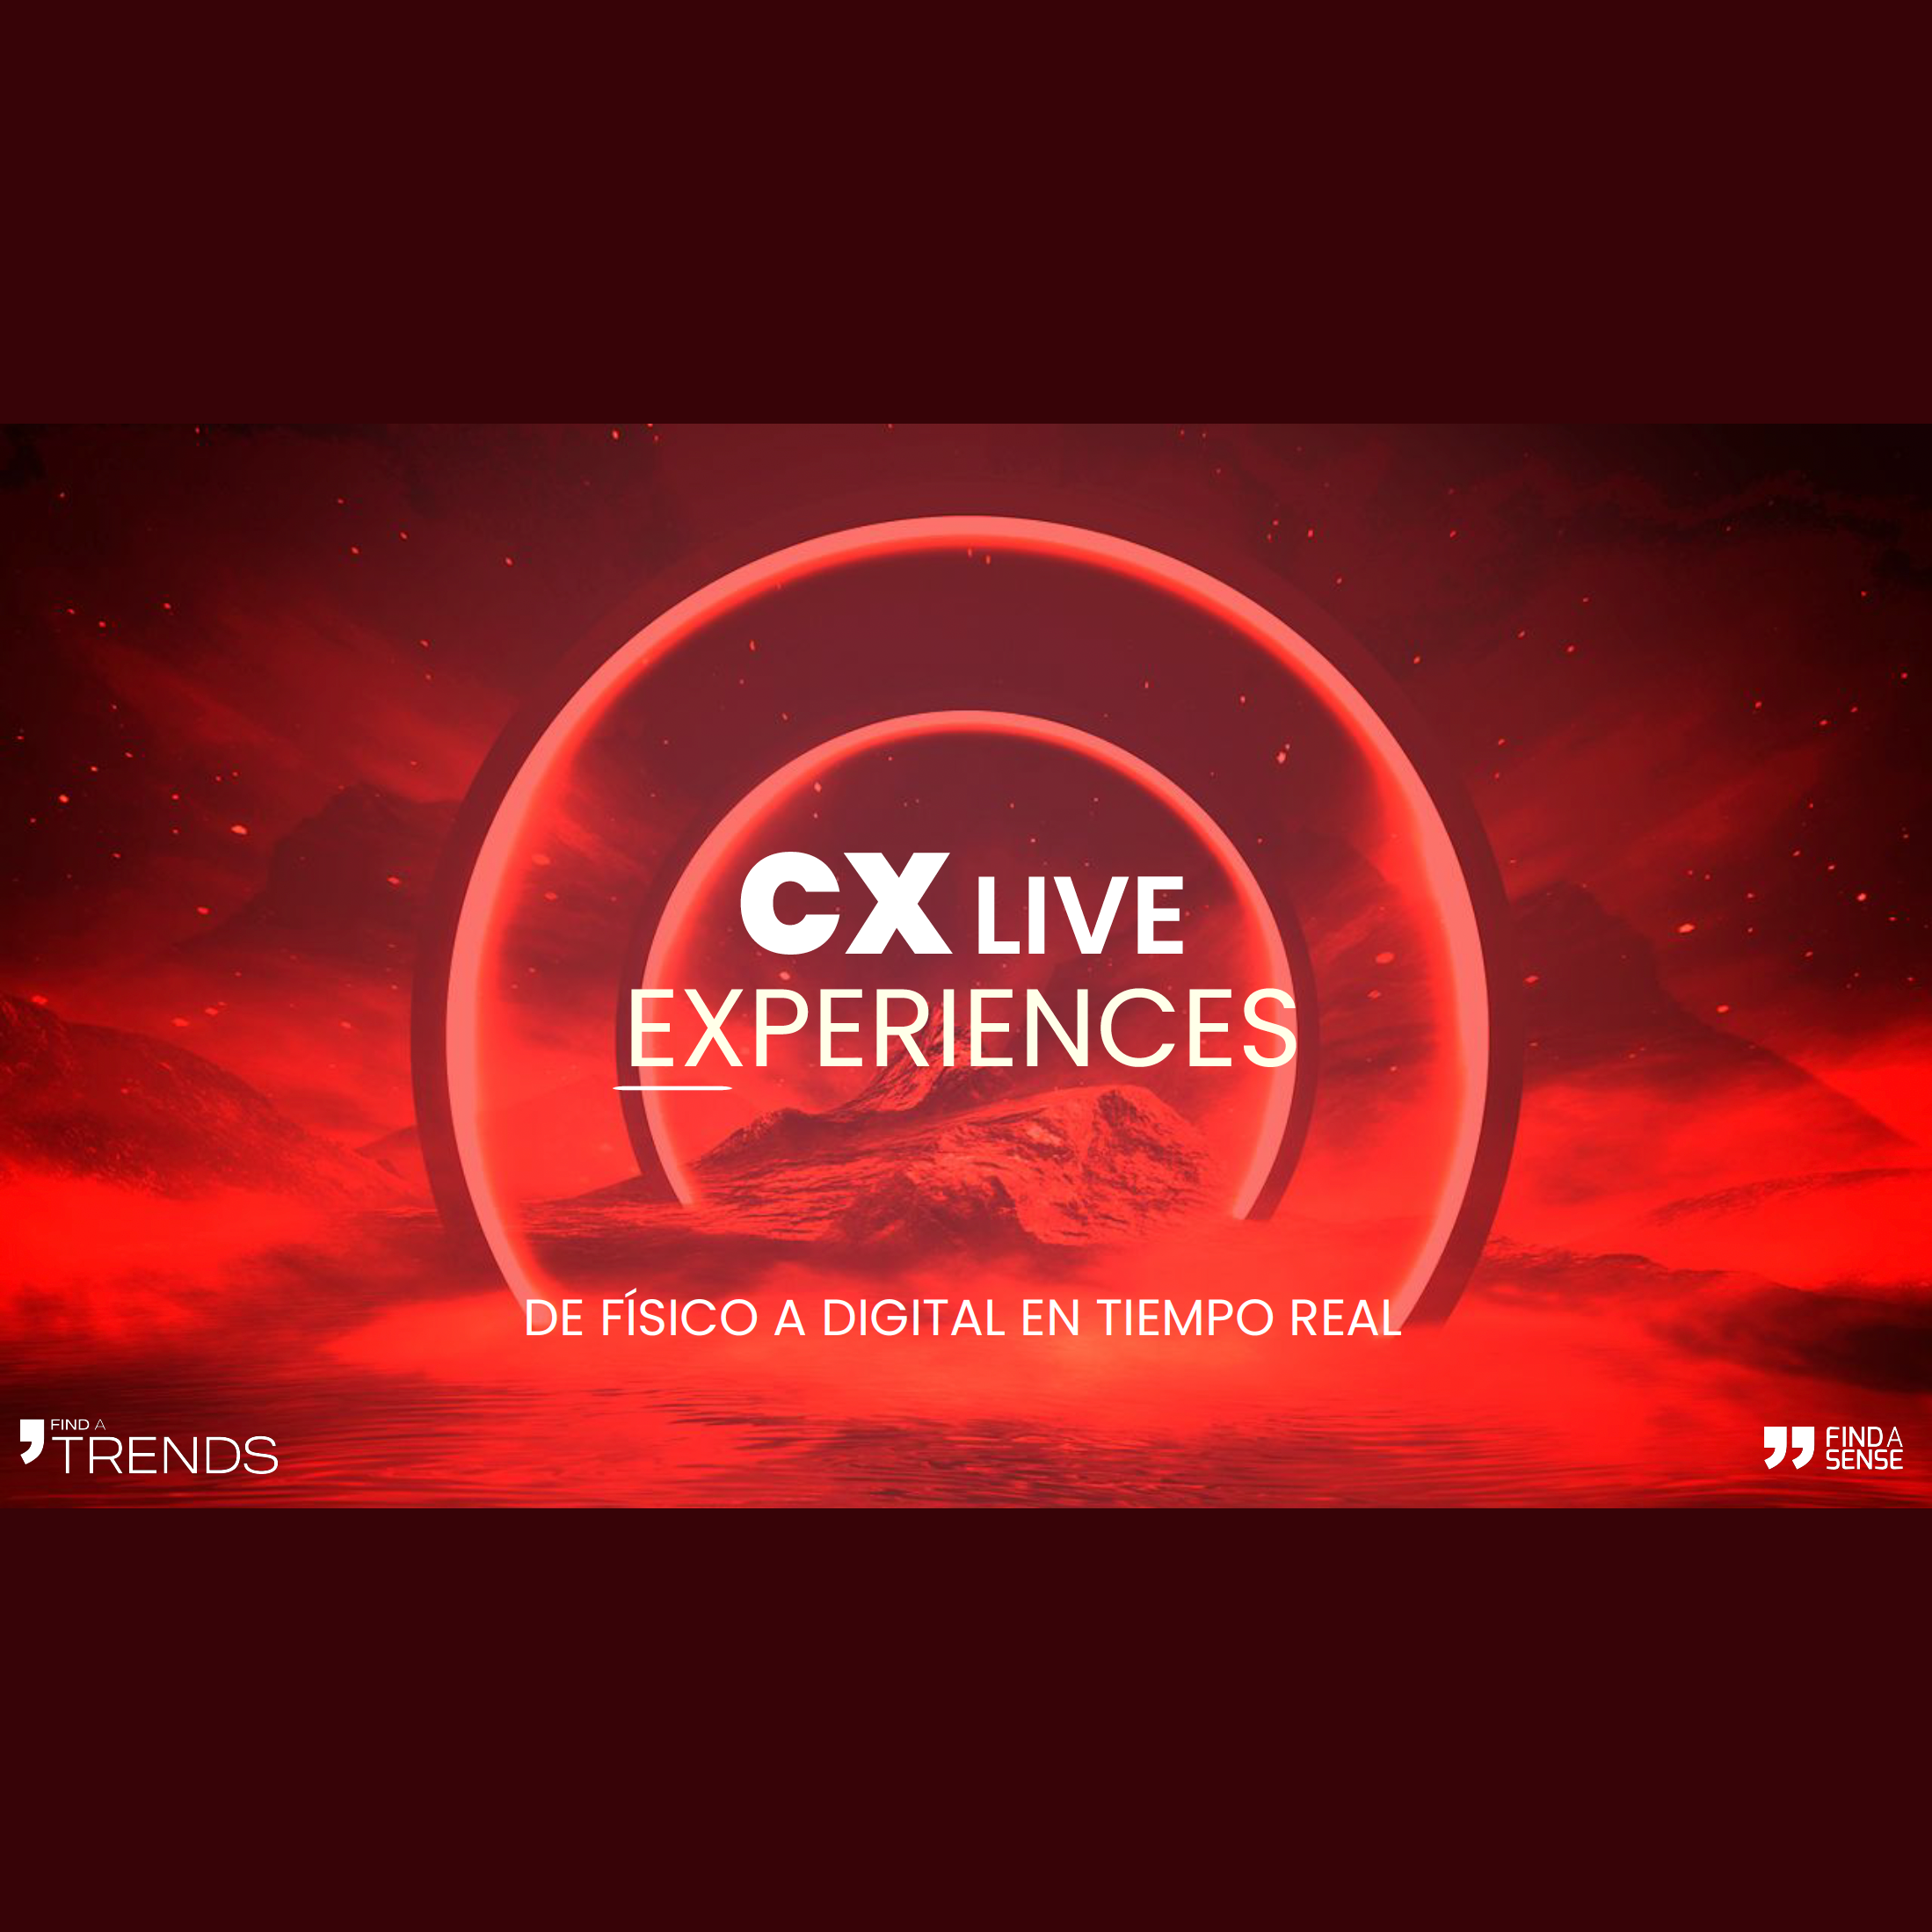 CX Live Experiences – De físico a digital en tiempo real